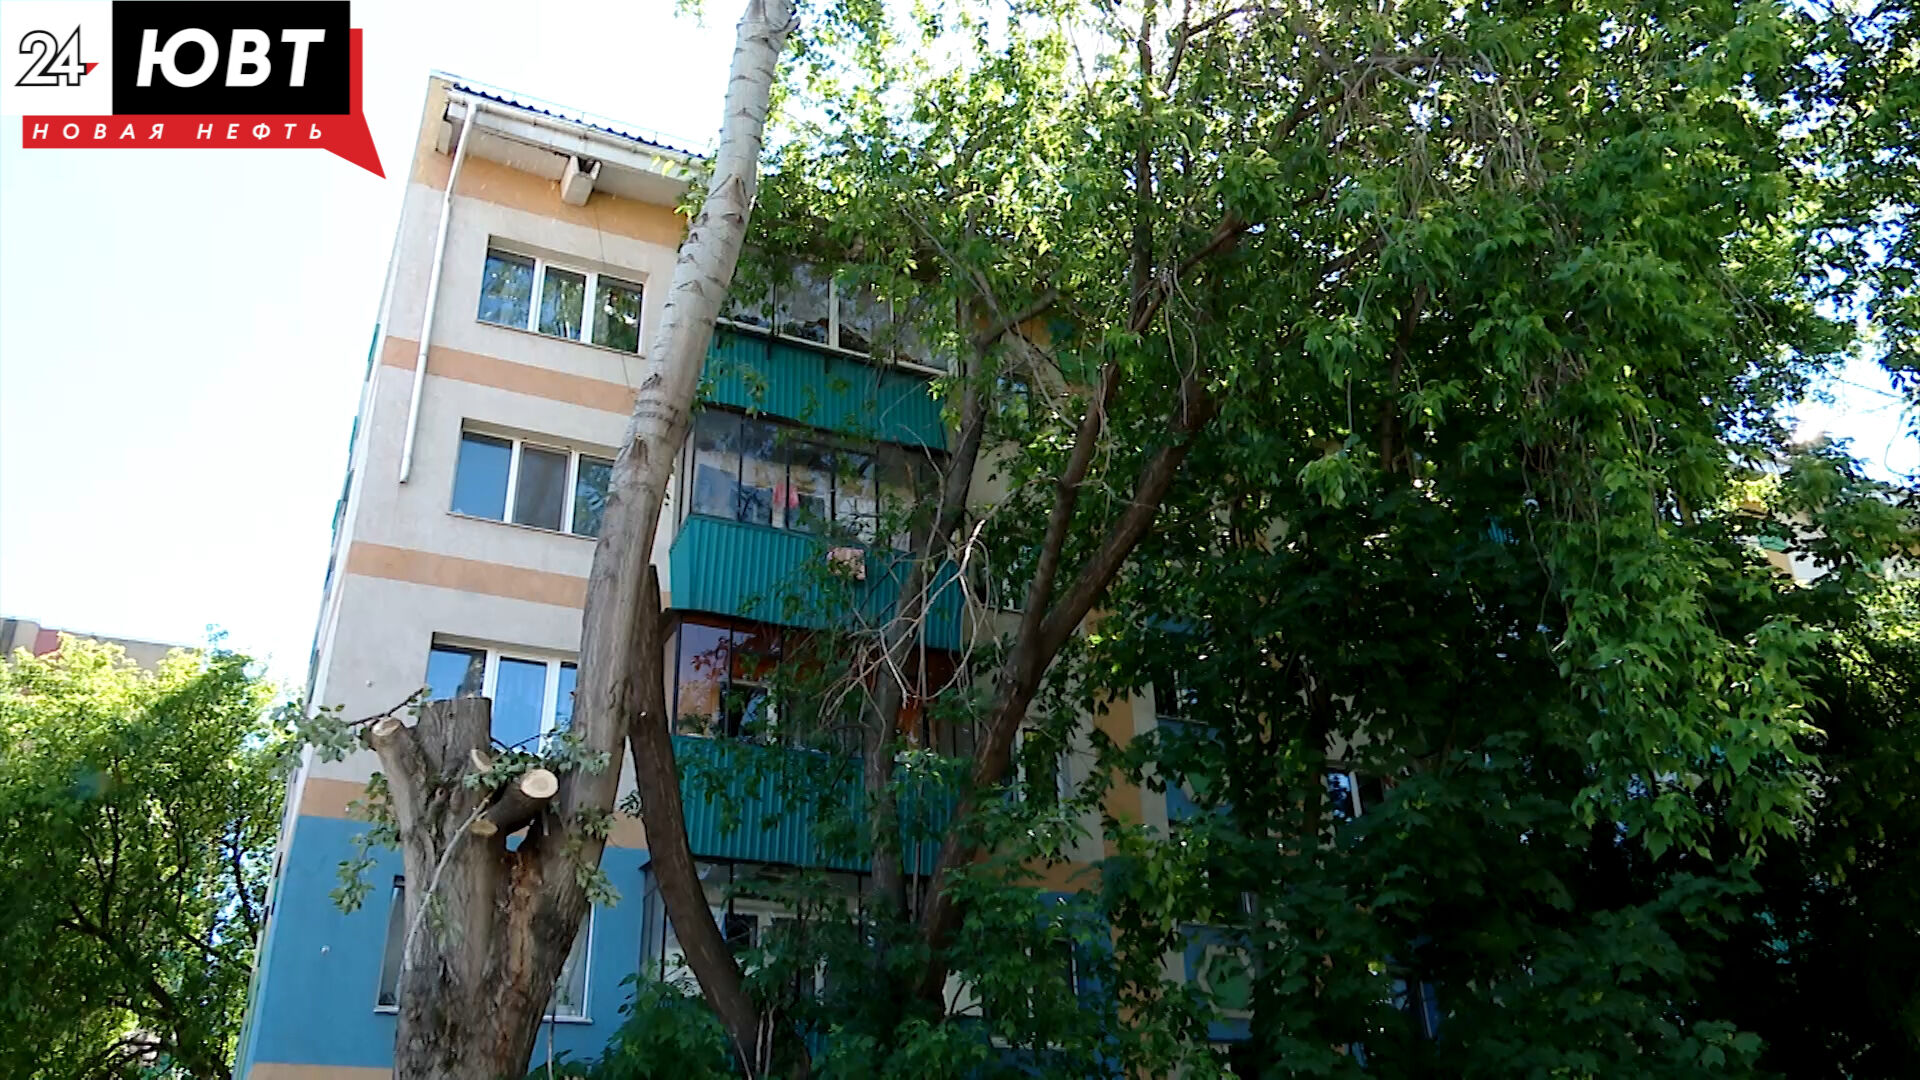 Альметьевцы не согласны с вырубкой деревьев ради новых тротуаров во дворе